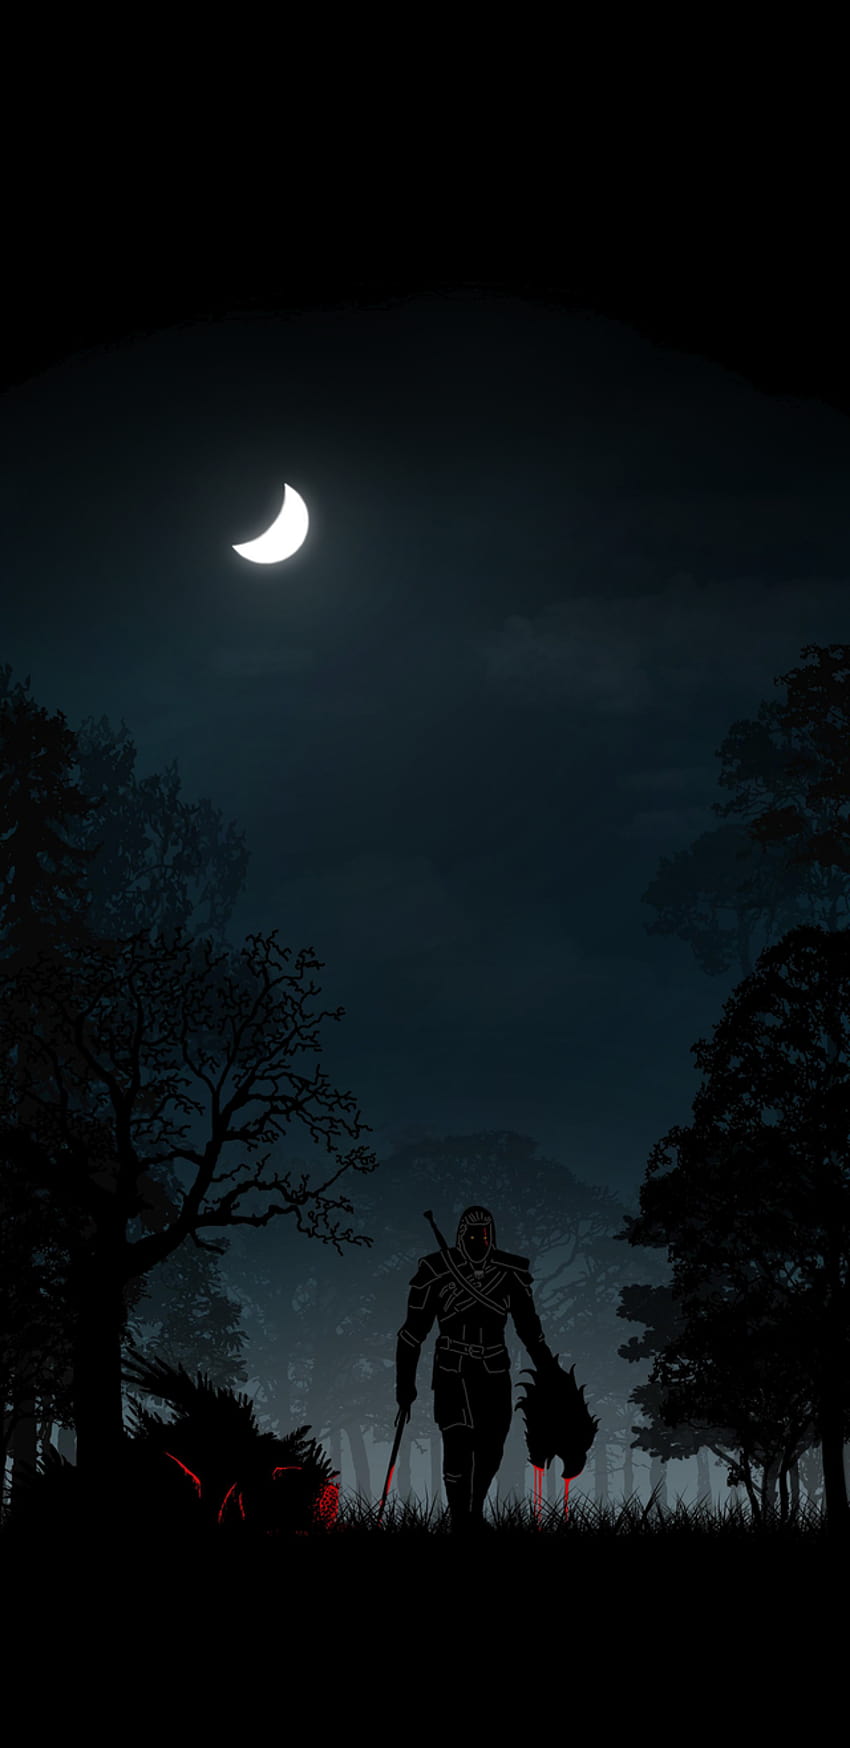 The Witcher 3 / Geralt von Rivia [1440x2960], Hexer 3 amoliert HD-Handy-Hintergrundbild